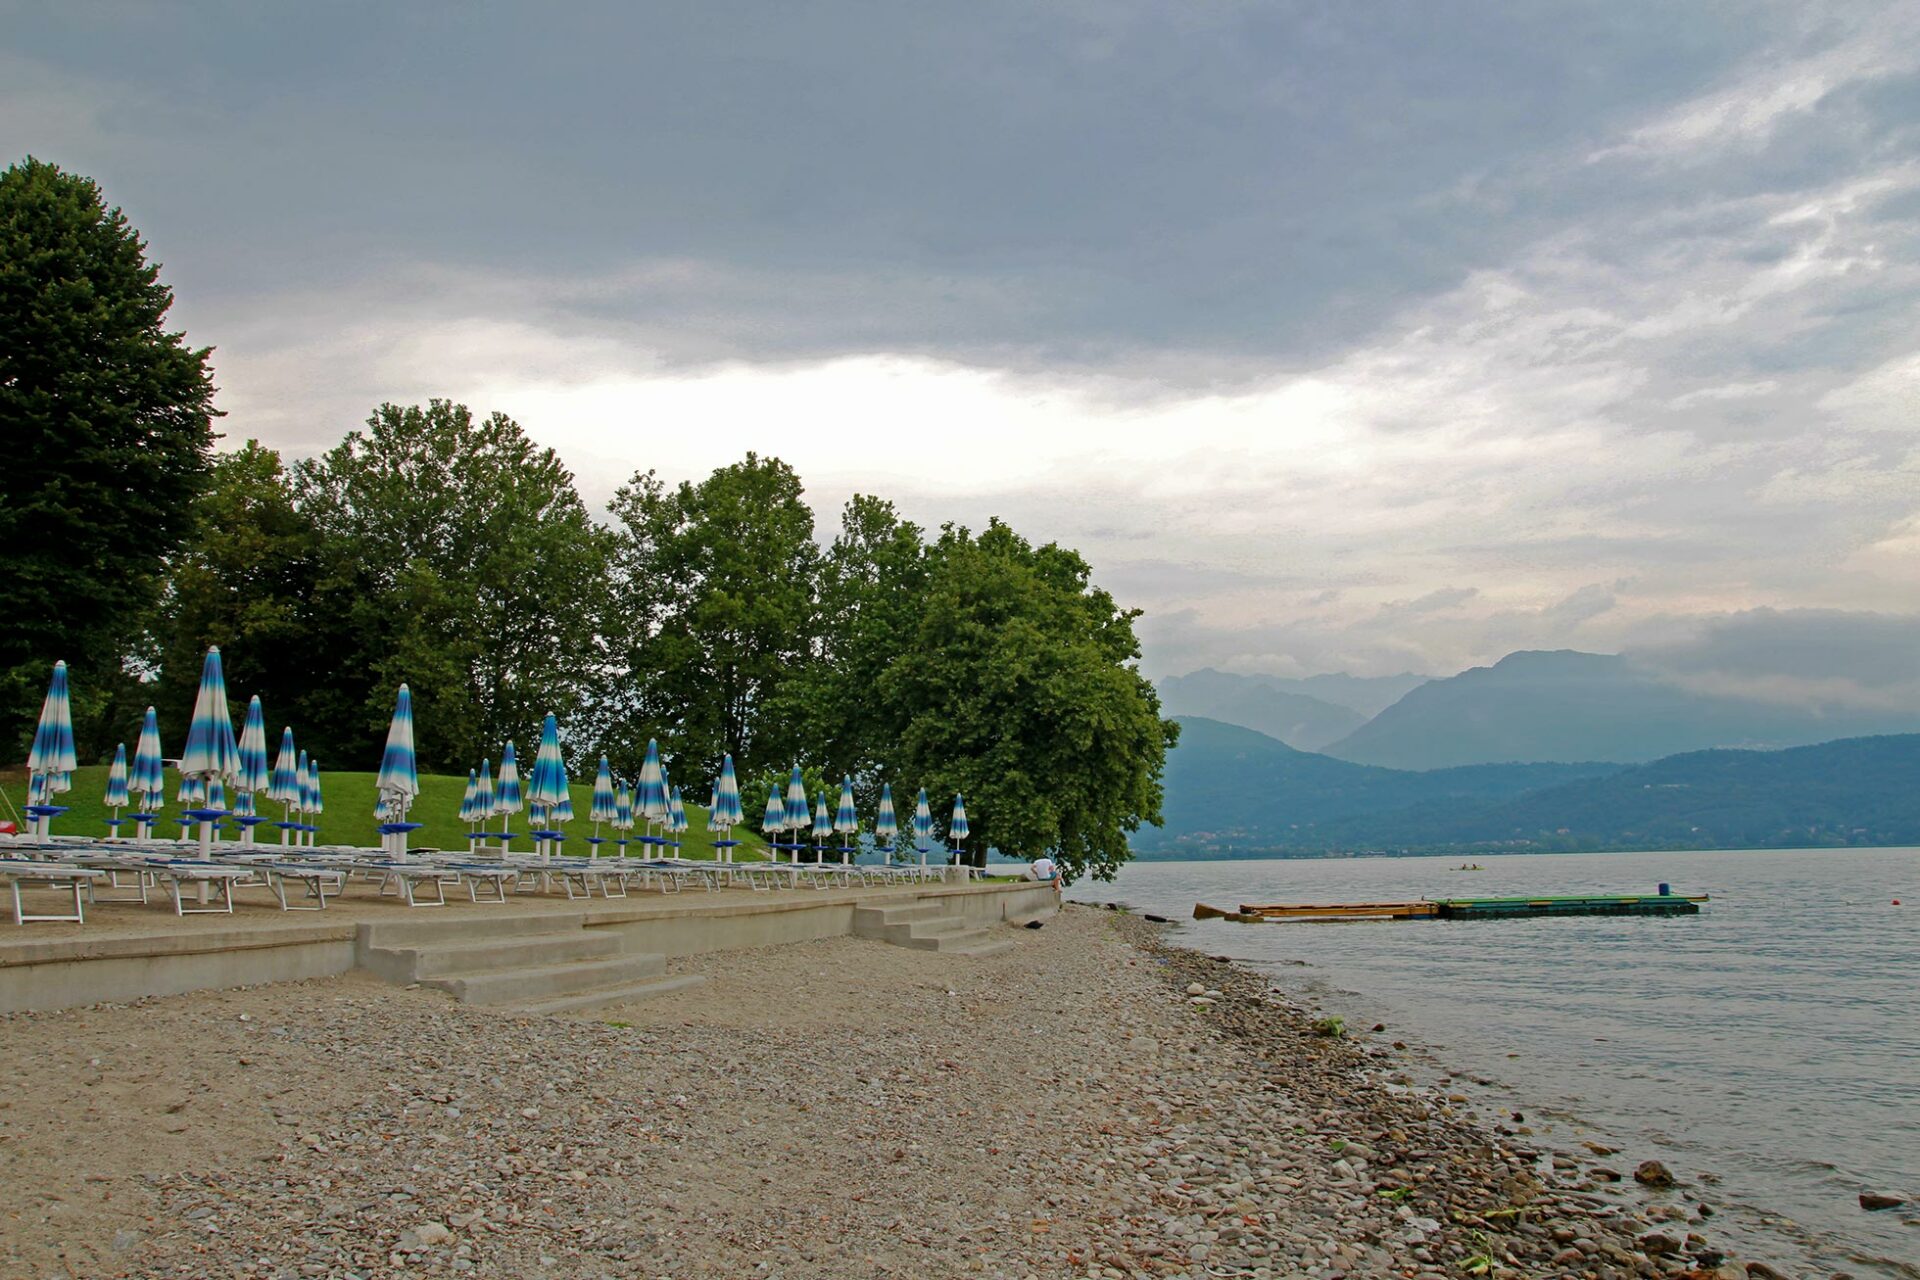 Baden im Lago Maggiore: Luft- und Wassertemperatur lagen ungefähr gleichauf